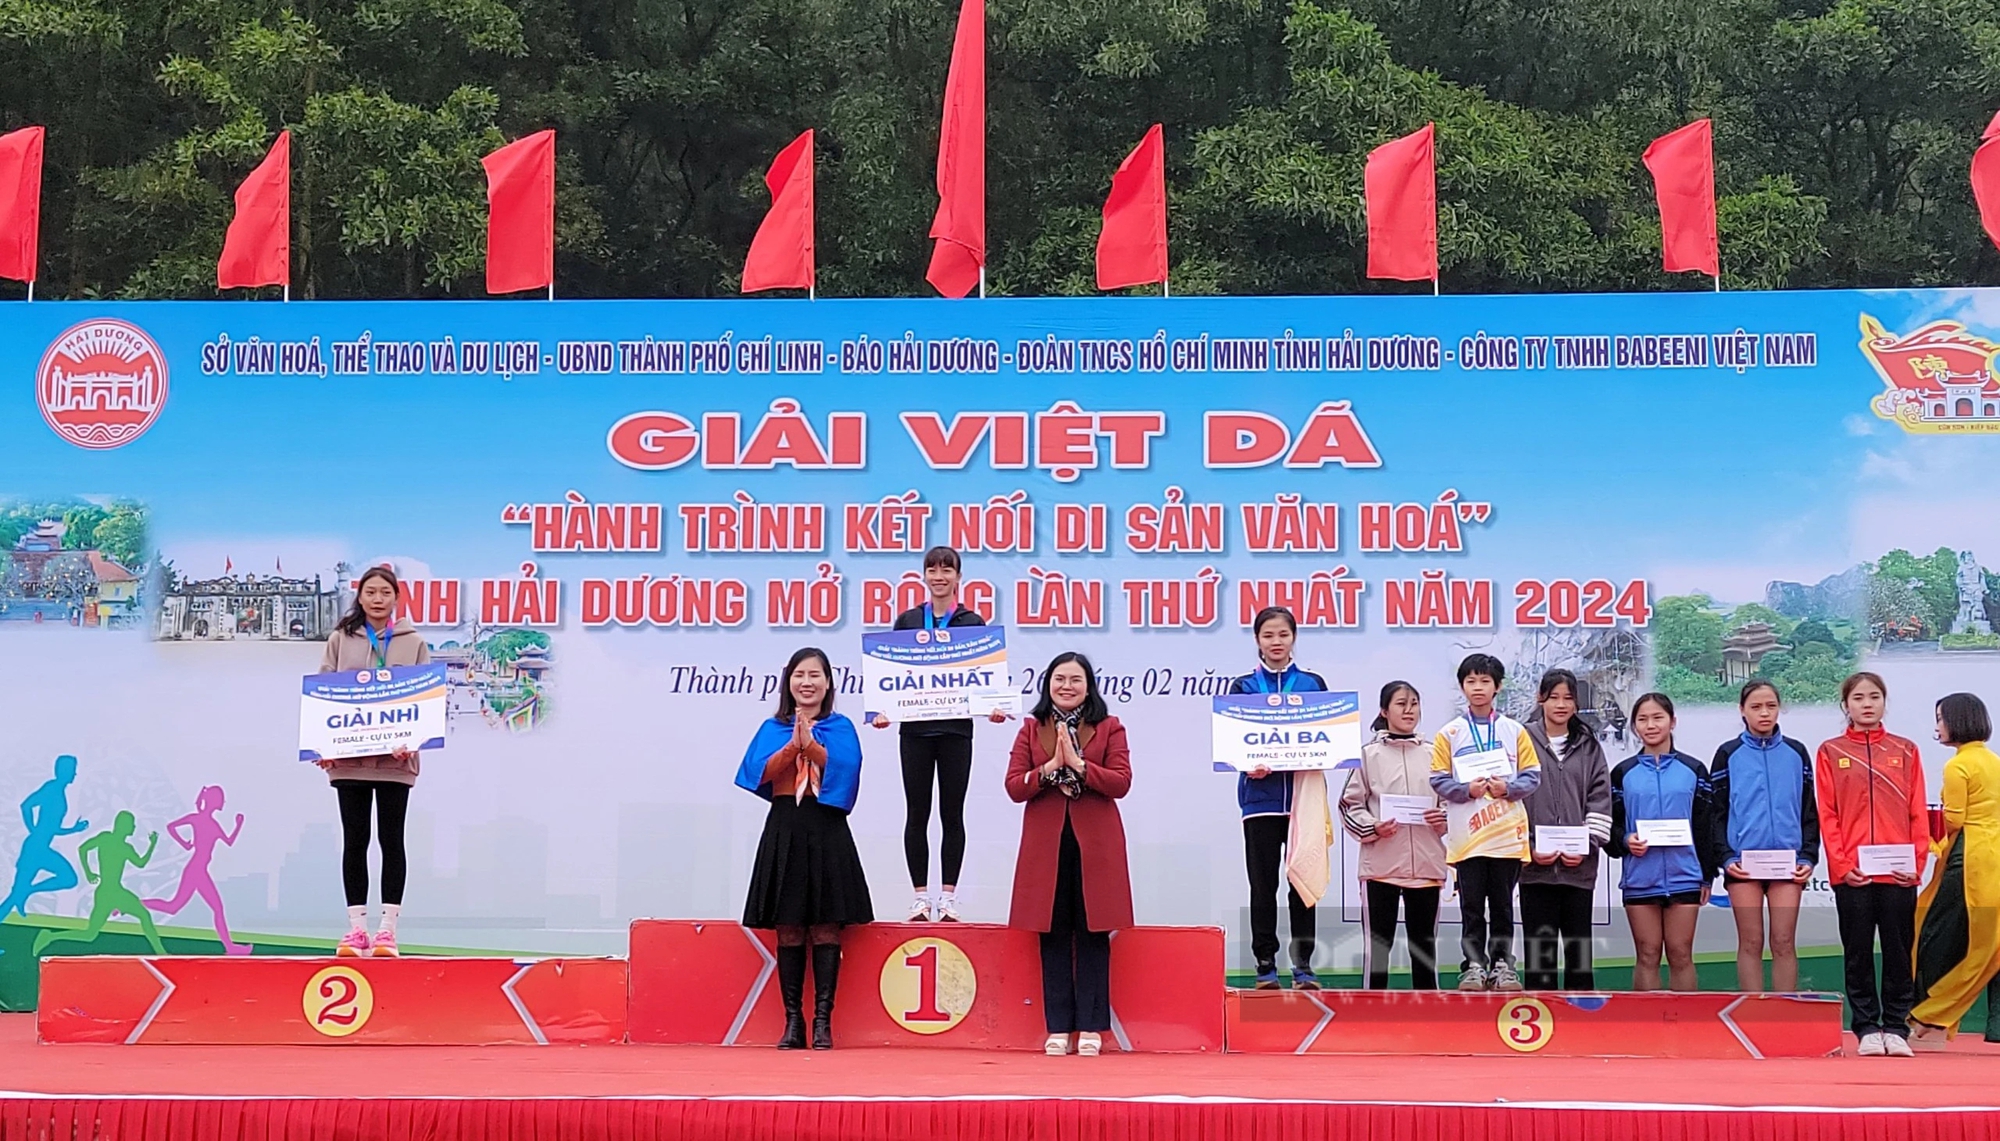 Cô gái "vàng" Nguyễn Thị Oanh và gần 1.000 người tham gia Giải Việt dã tỉnh Hải Dương mở rộng lần thứ nhất- Ảnh 10.